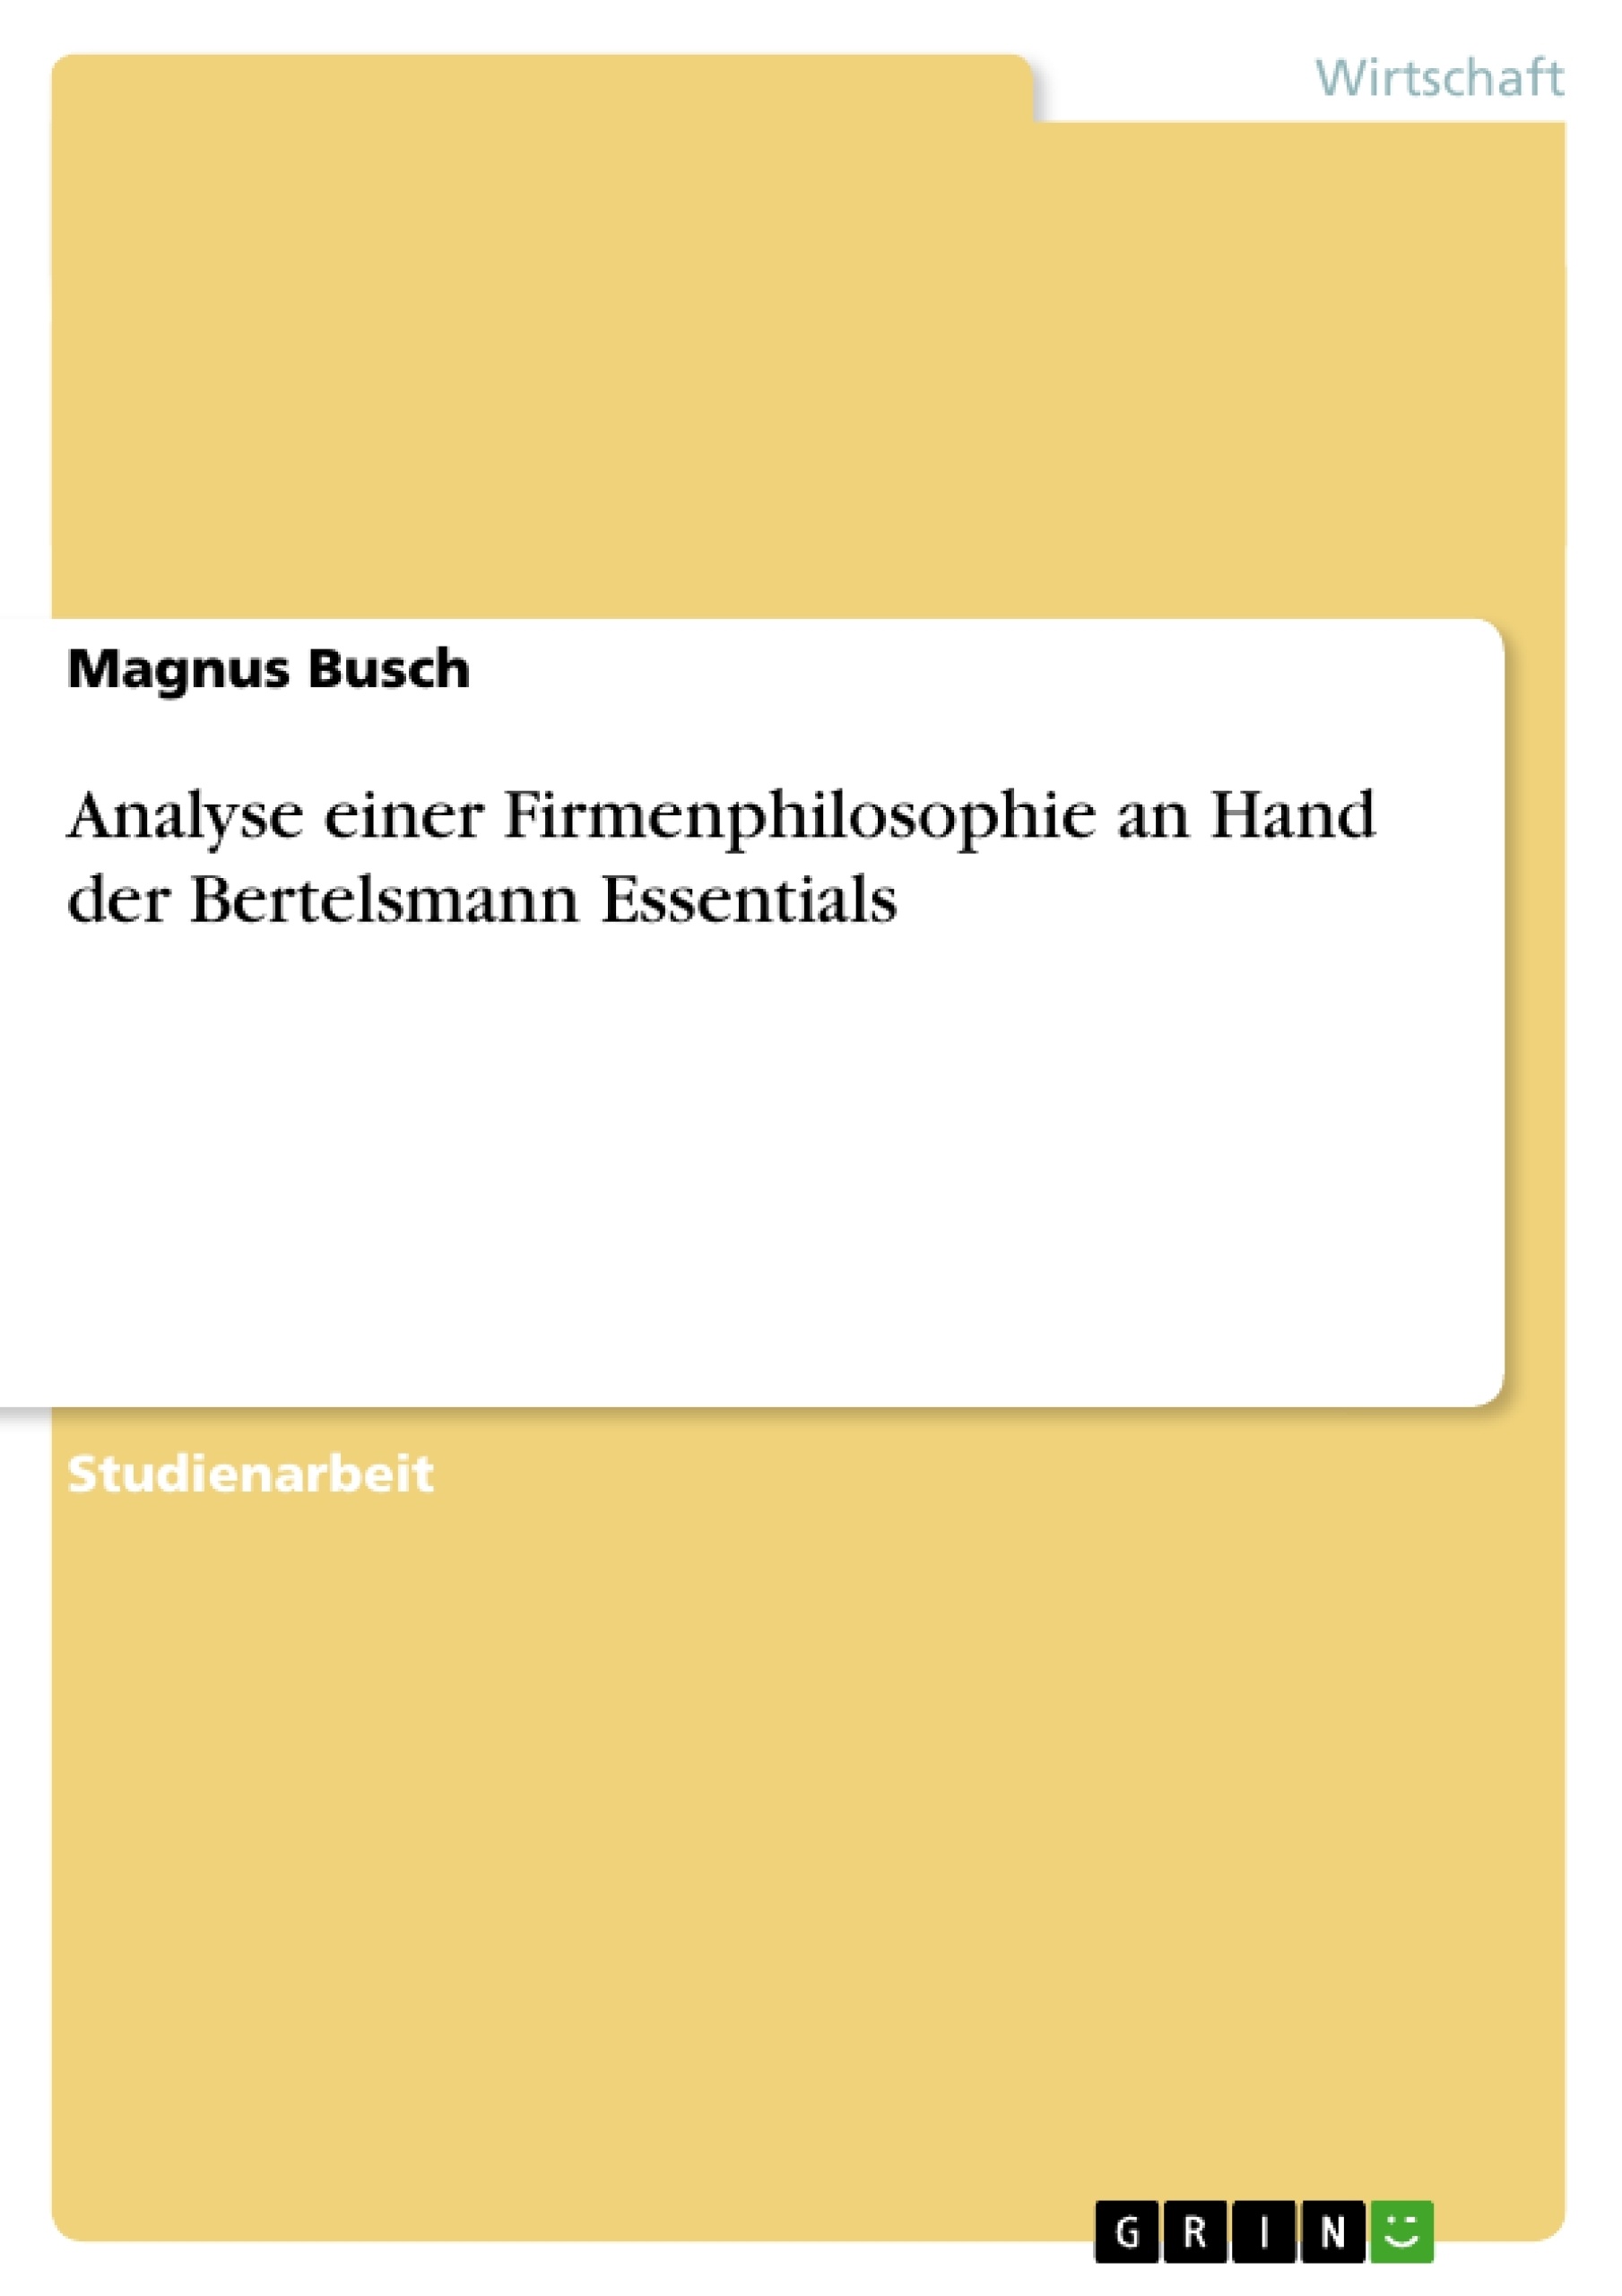 Titel: Analyse einer Firmenphilosophie an Hand der Bertelsmann Essentials